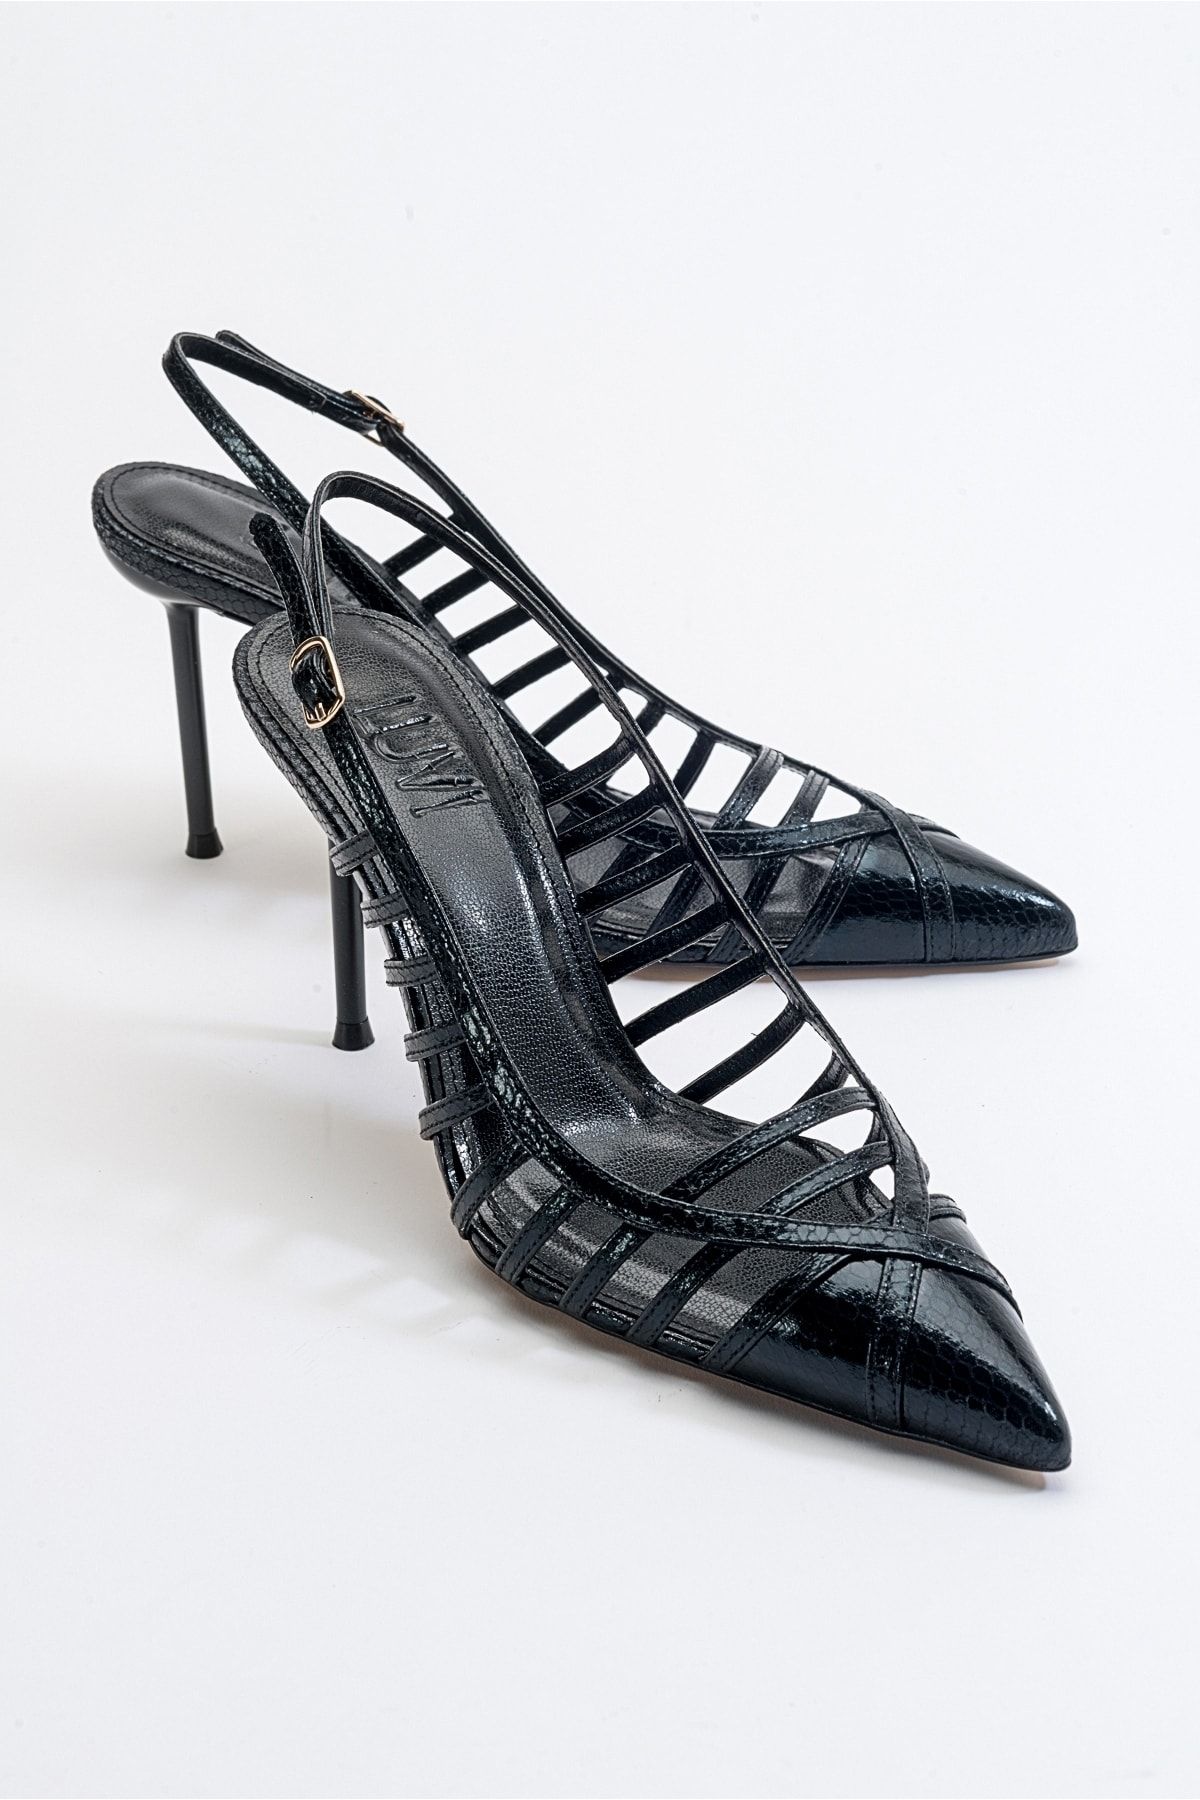 luvishoes Gesto Siyah Desenli Kadın Topuklu Ayakkabı